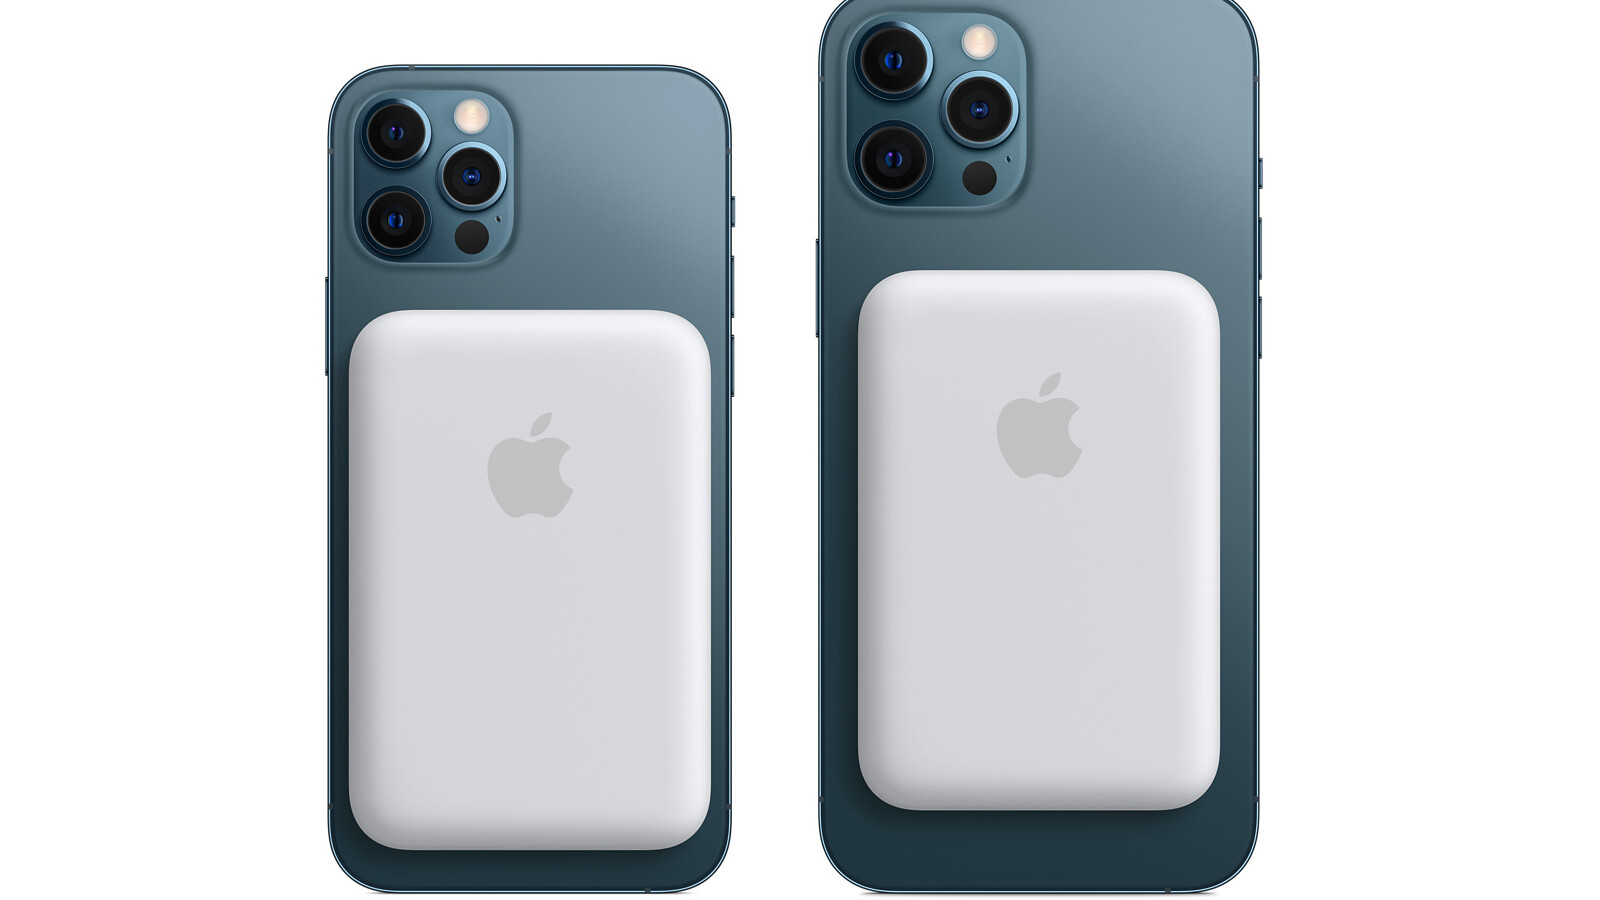 Für iPhone 12: Apple stellt MagSafe-Akku mit Reverse Wireless